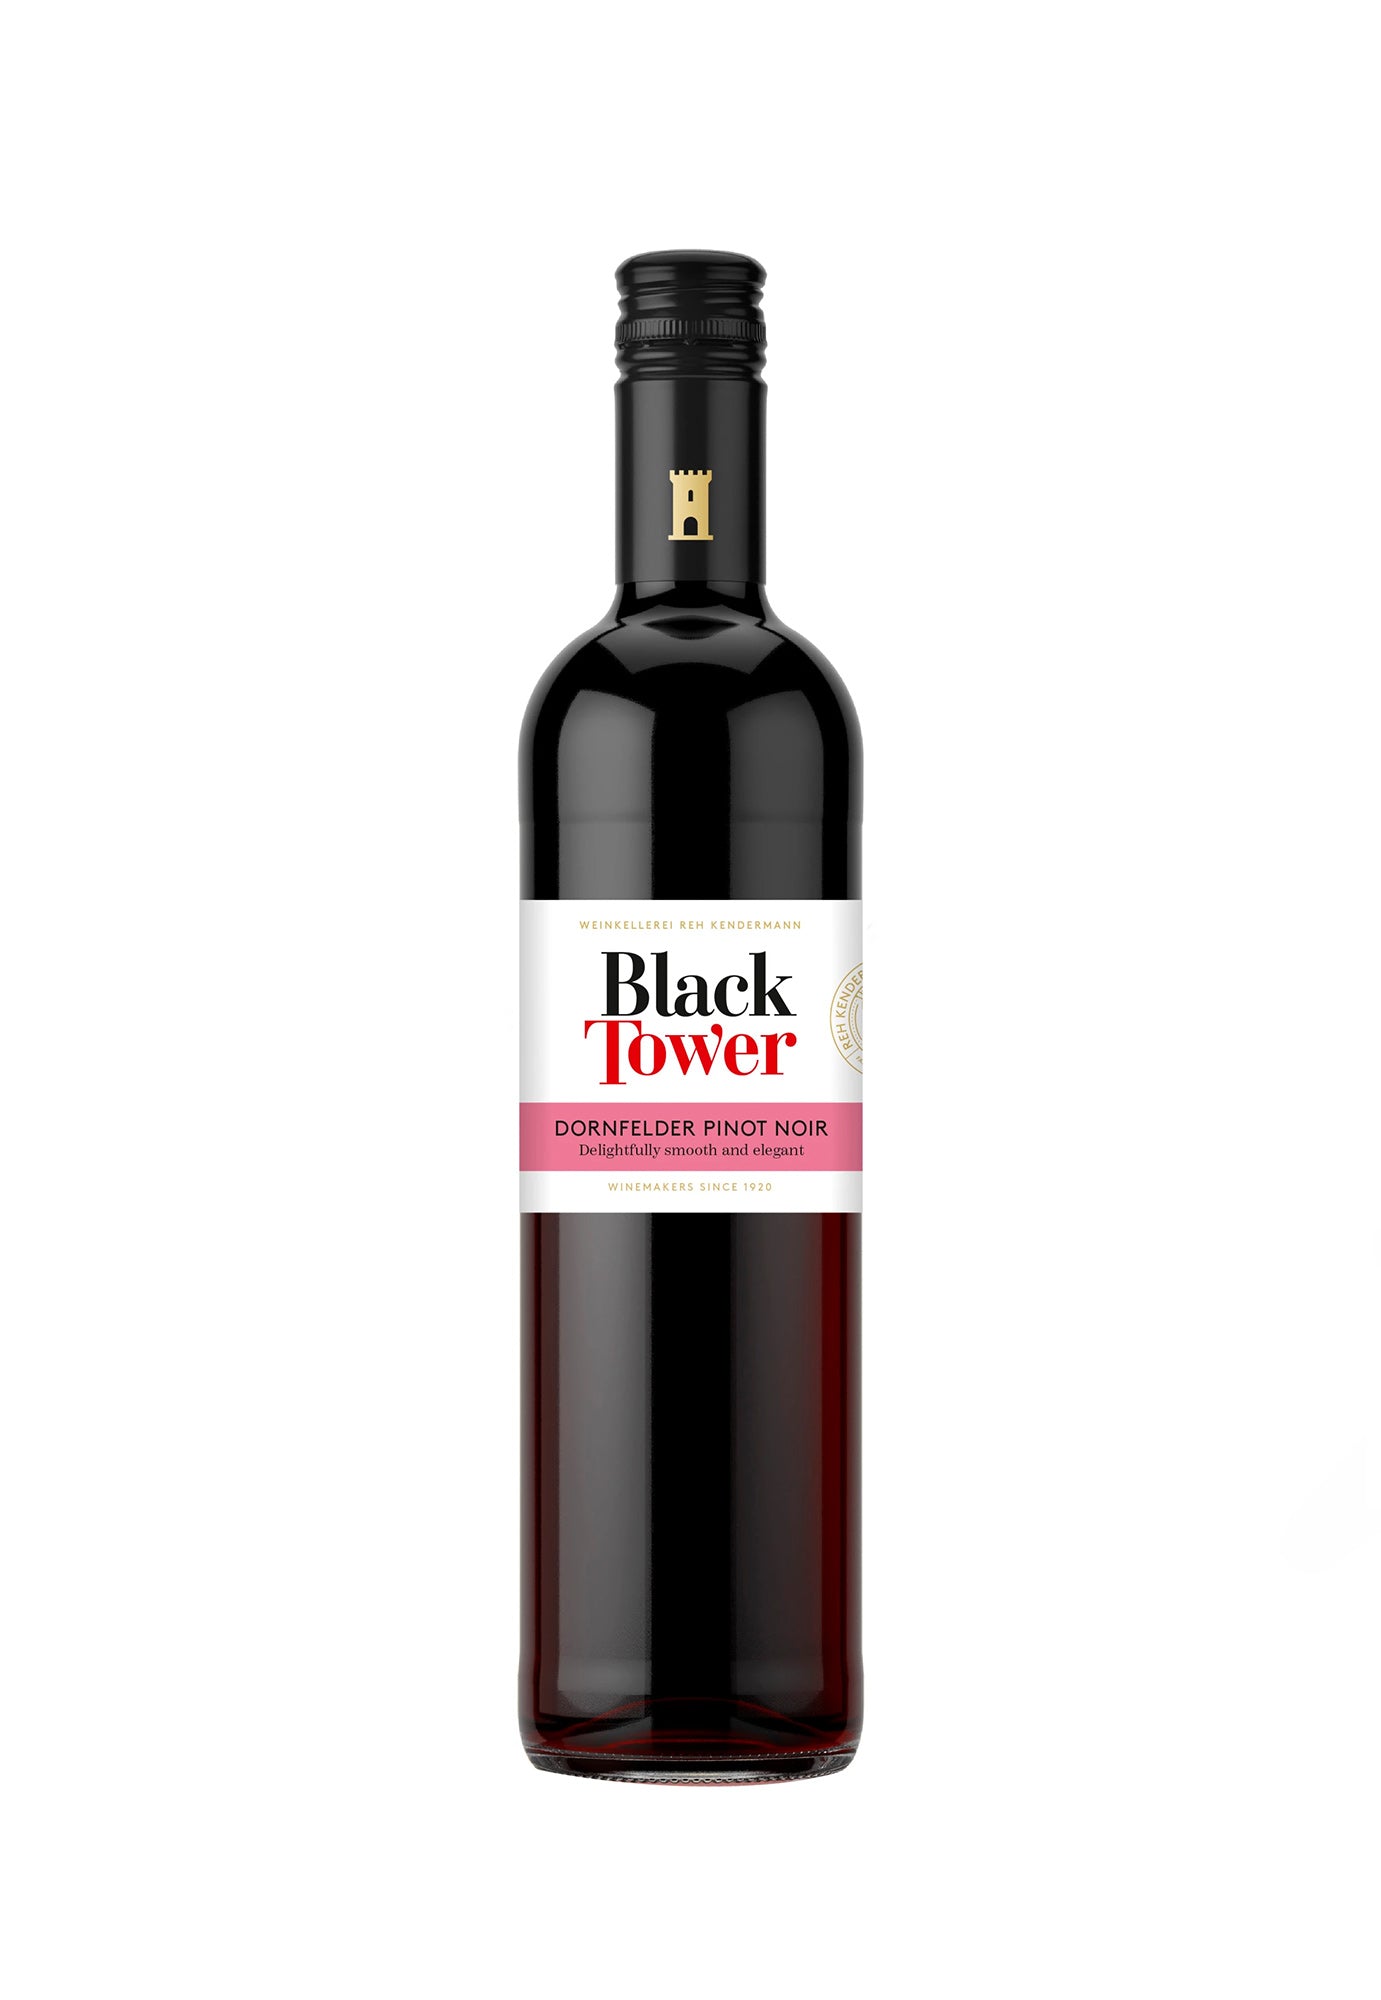 Black Tower Pinot Noir Dornfelder